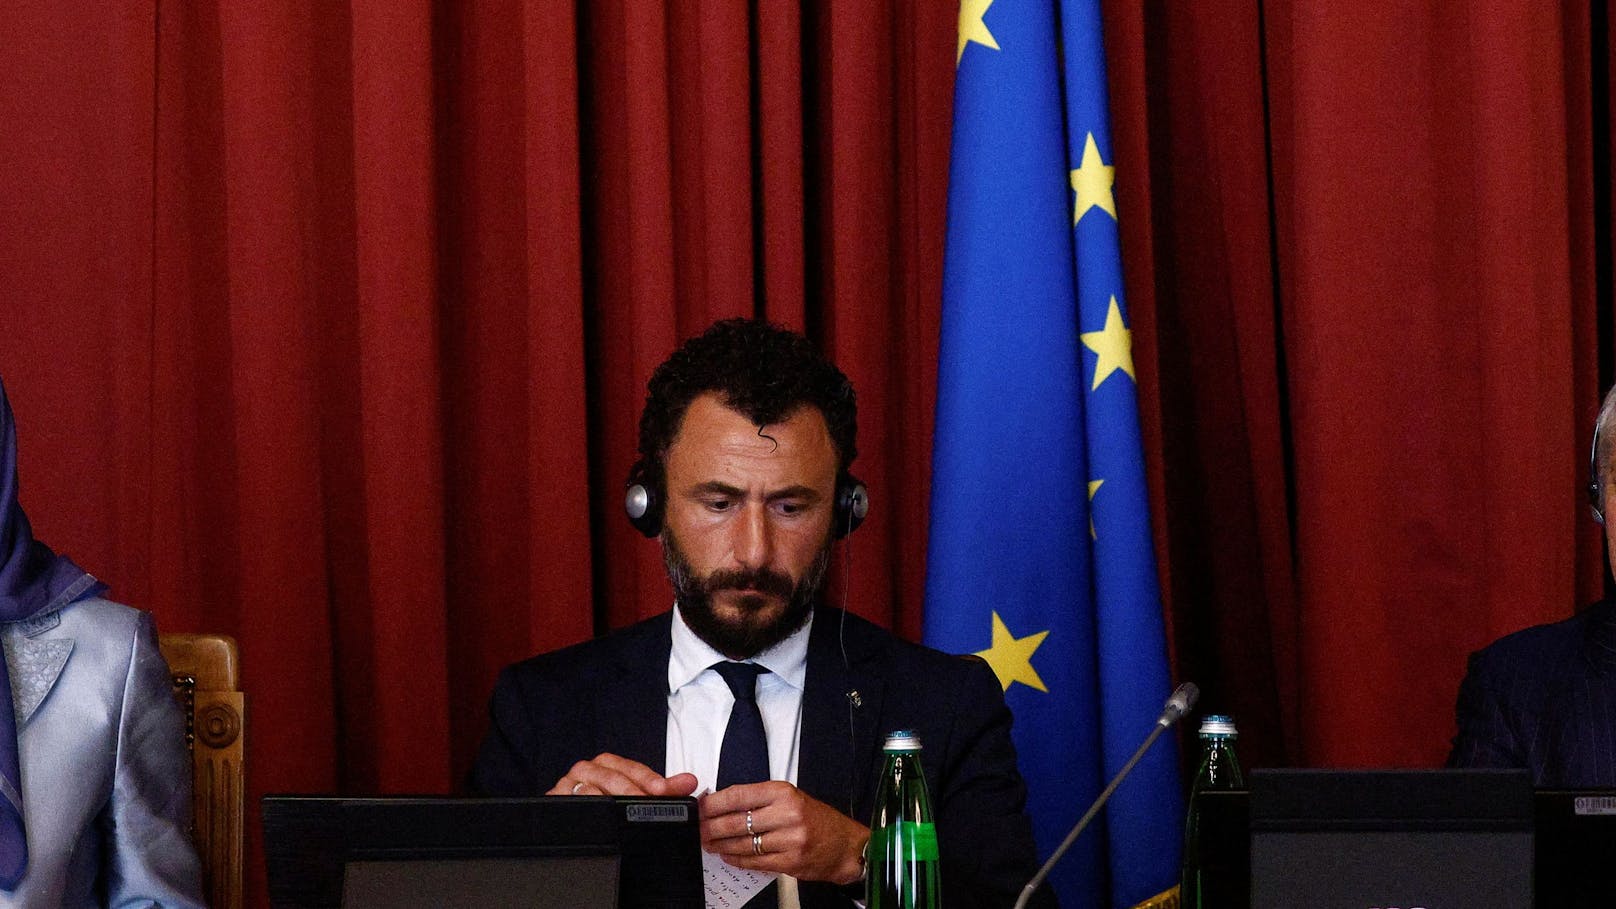 Italienischer Abgeordneter nach Schuss suspendiert